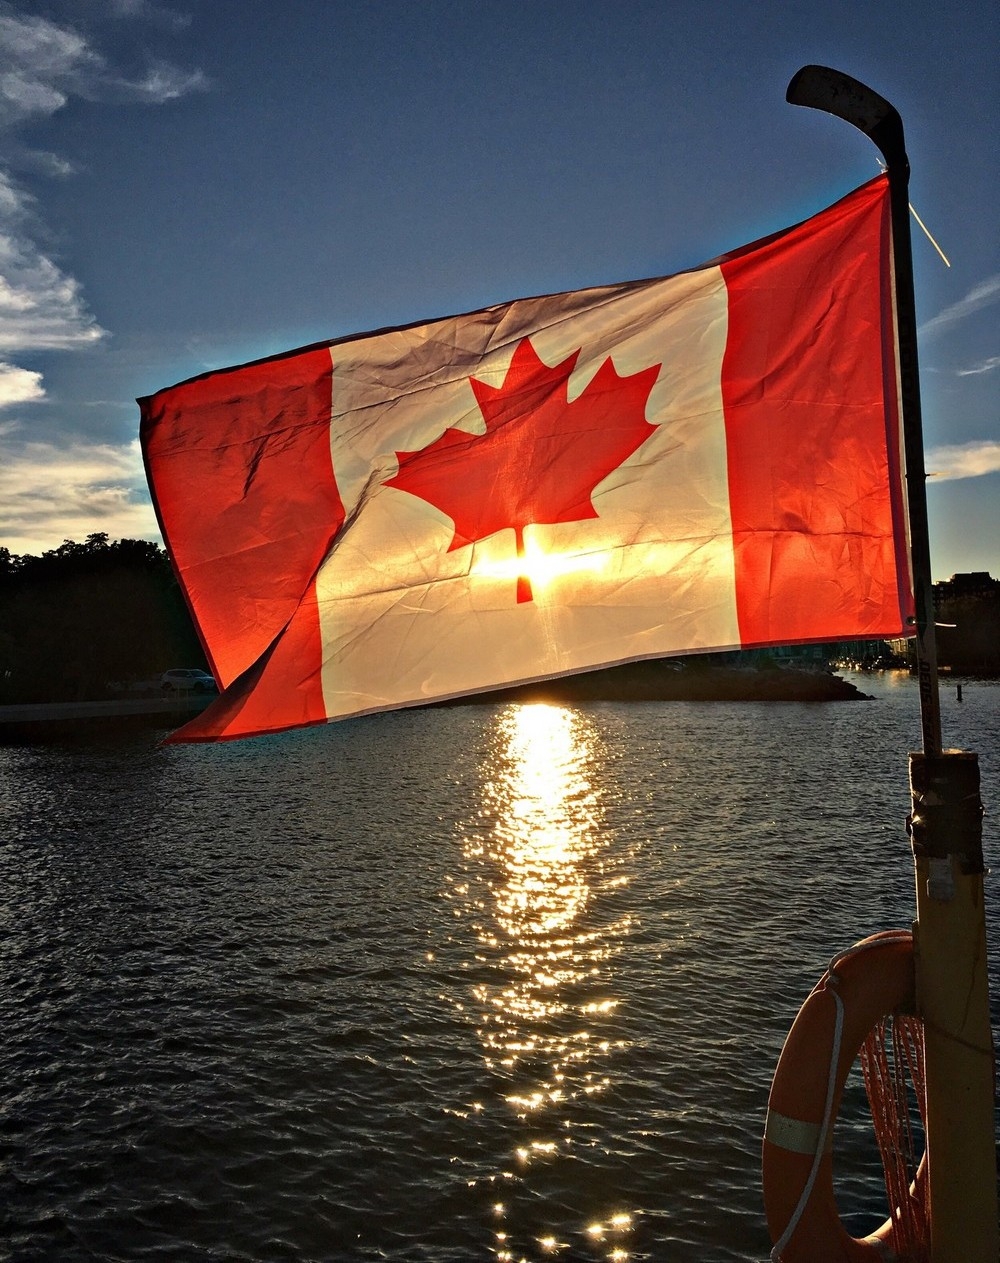 Семерка в канаде. Жизнь в Канаде. Канадский терадин. Время в Канаде. Канада фото желек.